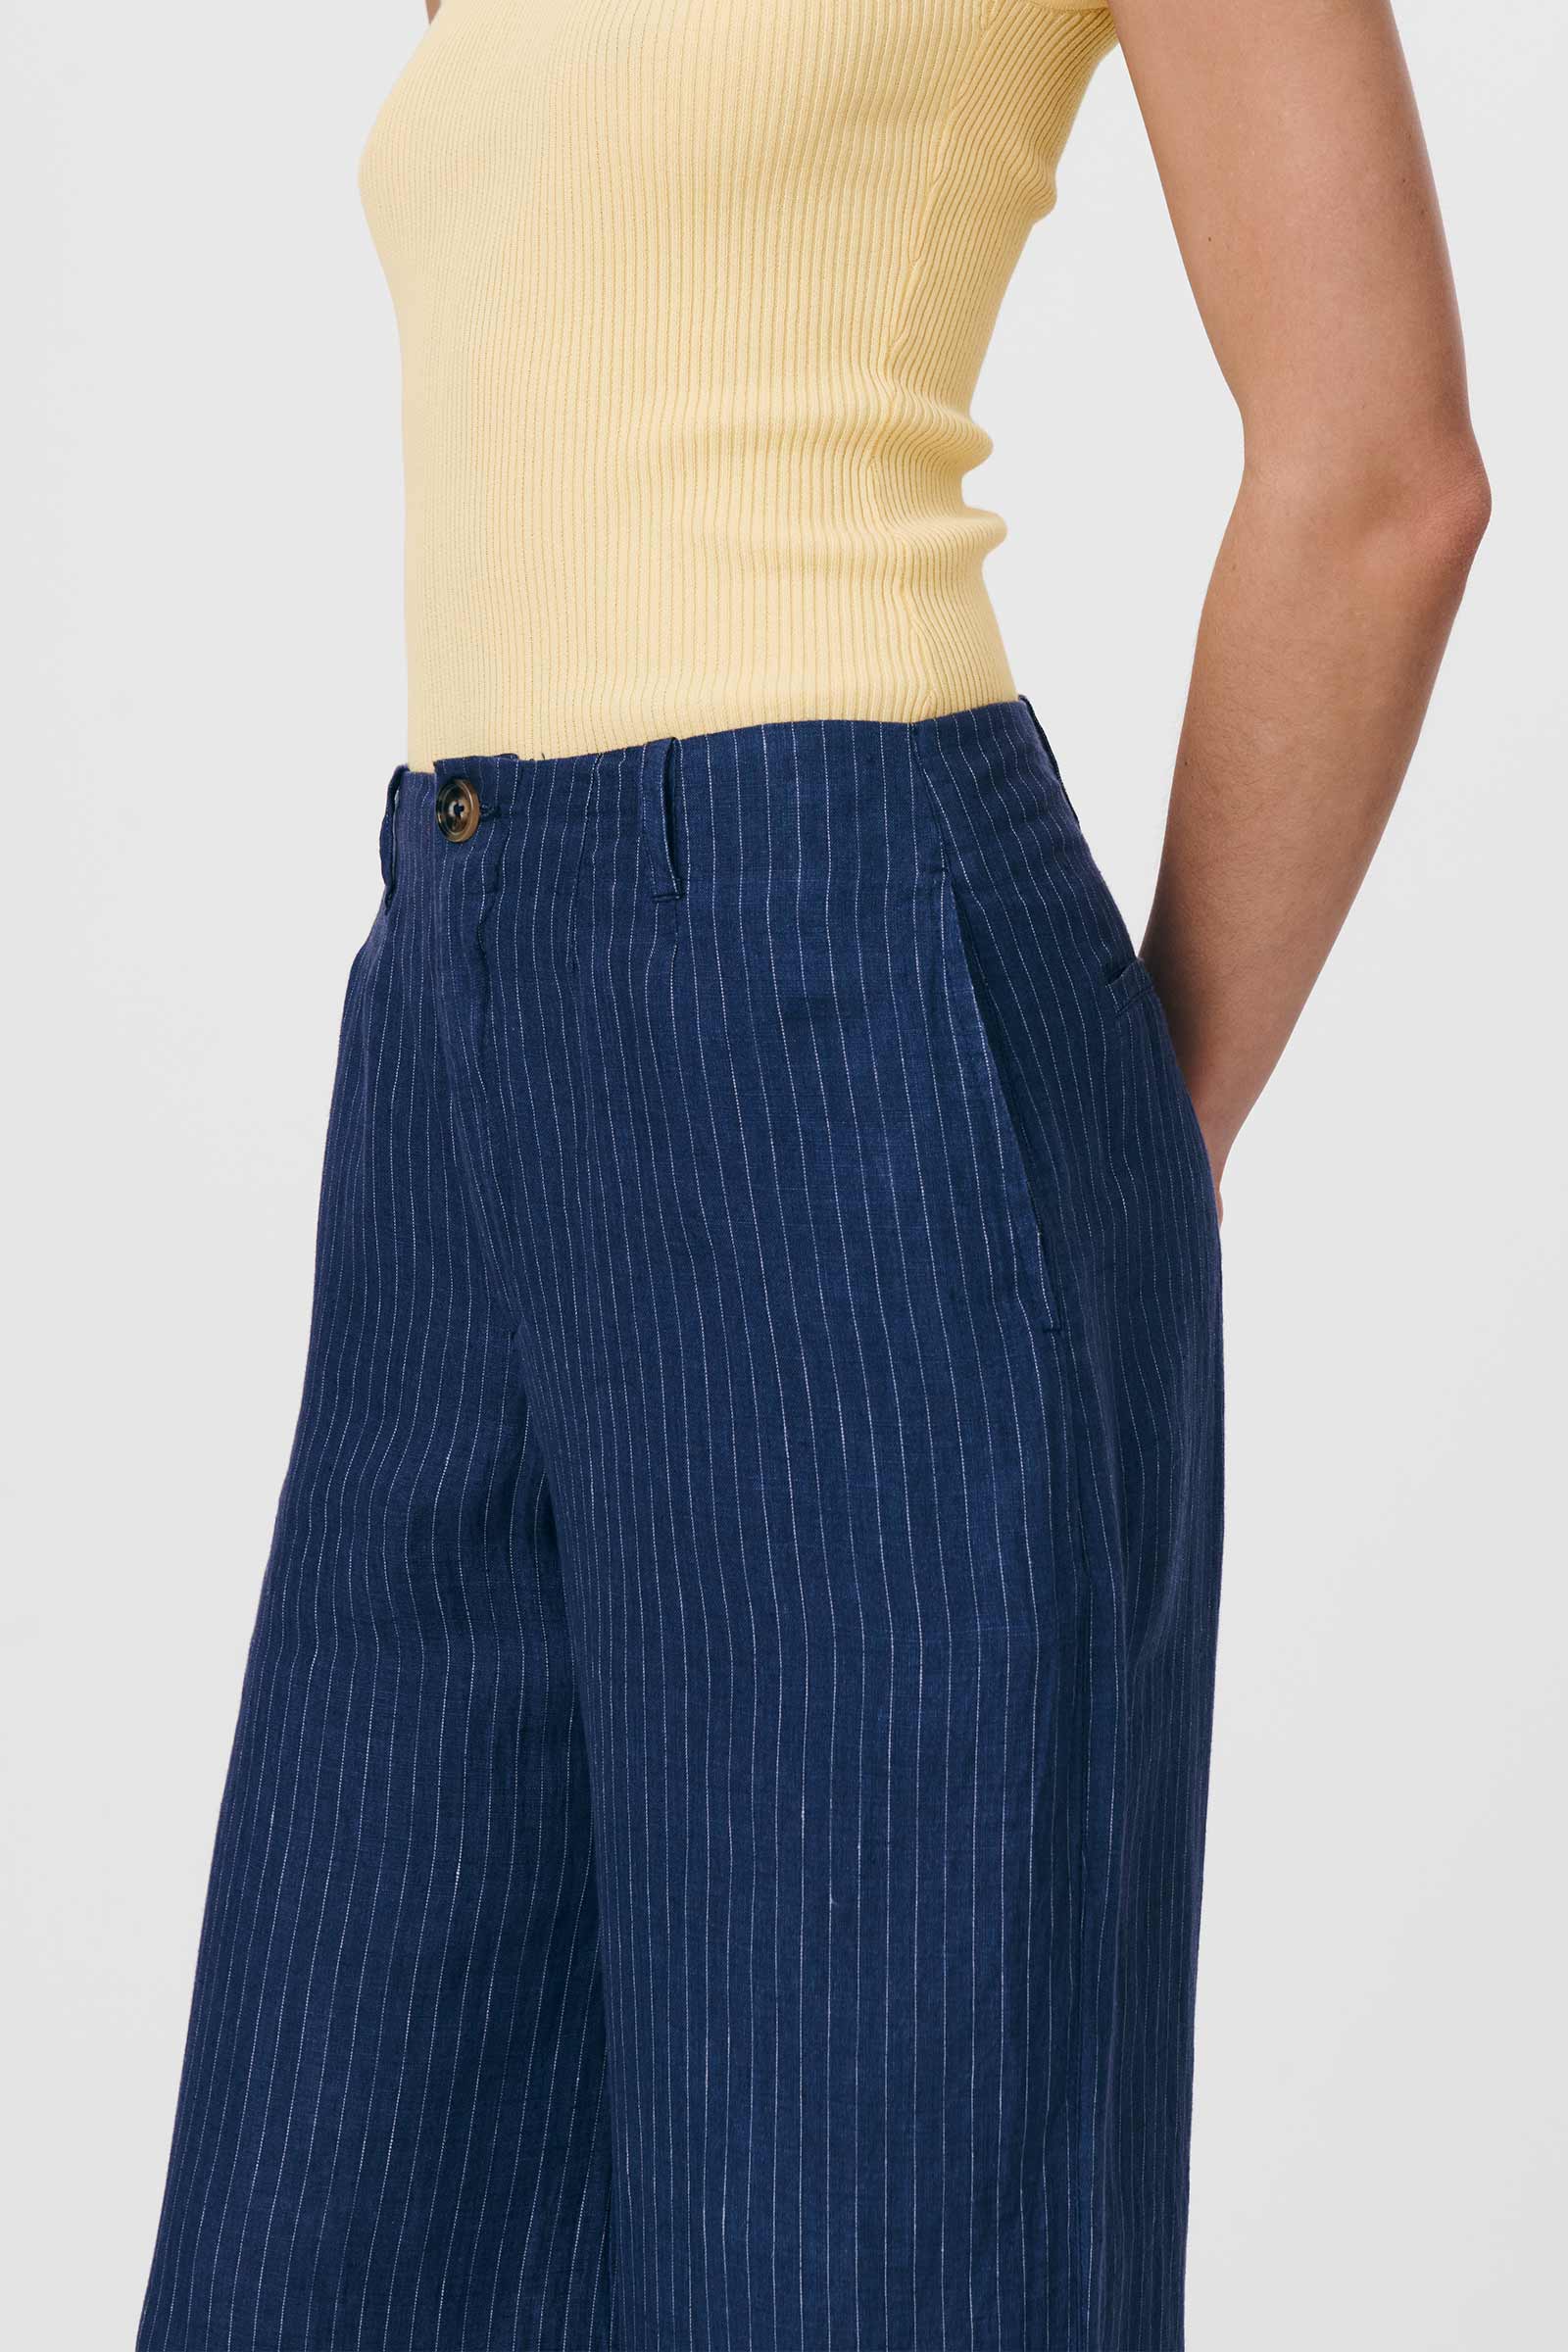 Carlotta Stripe Wide Pants Navy Pinstripe